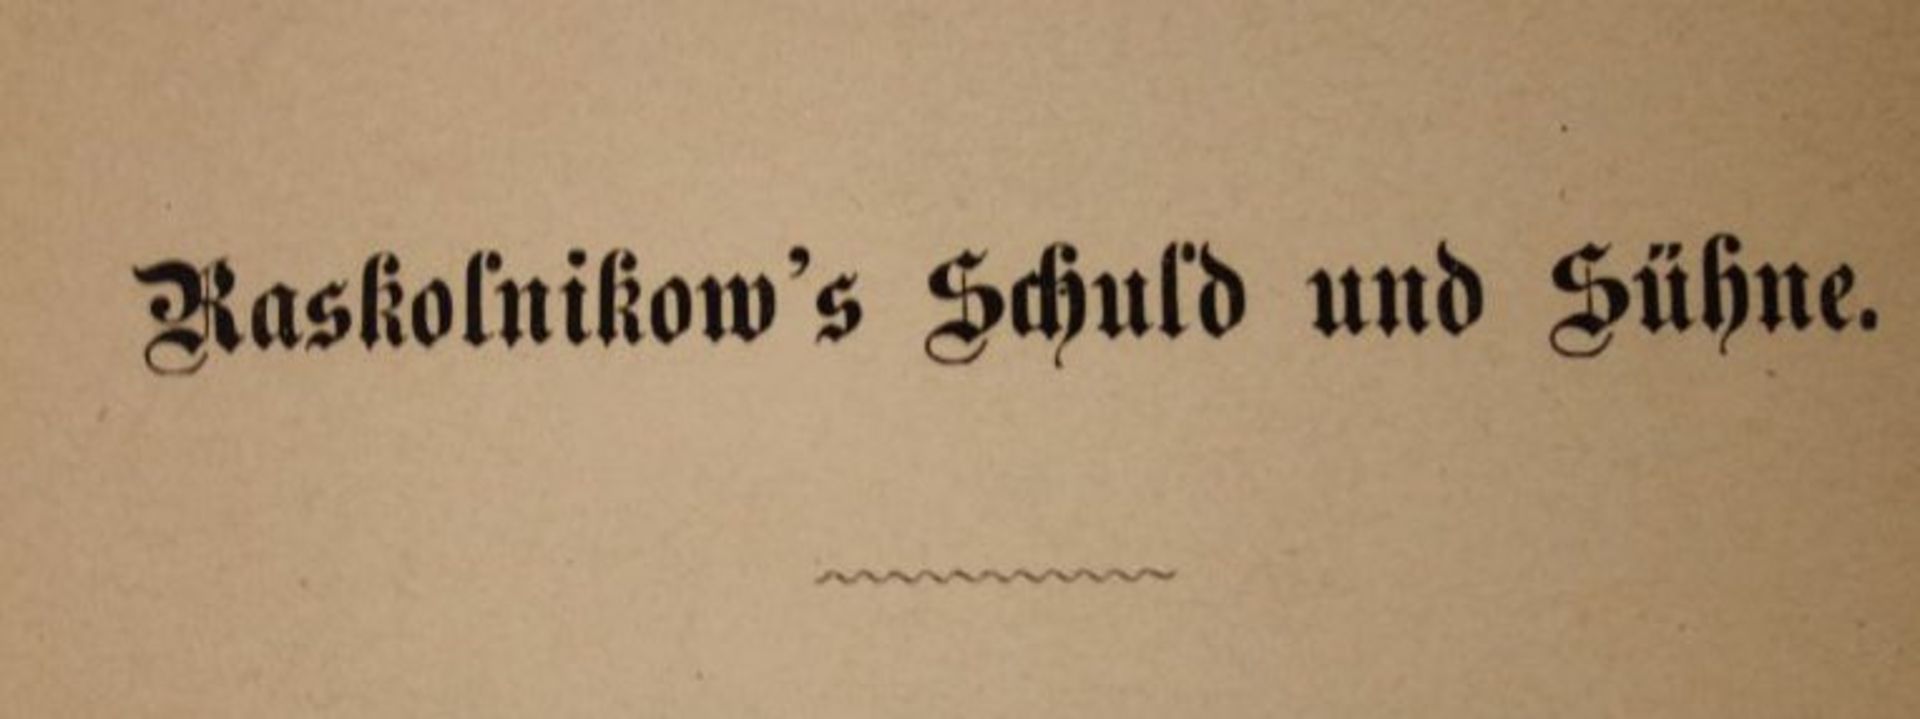 Raskolnikow's Schuld und Sühne, Dostojewski, um 1900.- - -22.61 % buyer's premium on the hammer - Bild 3 aus 3